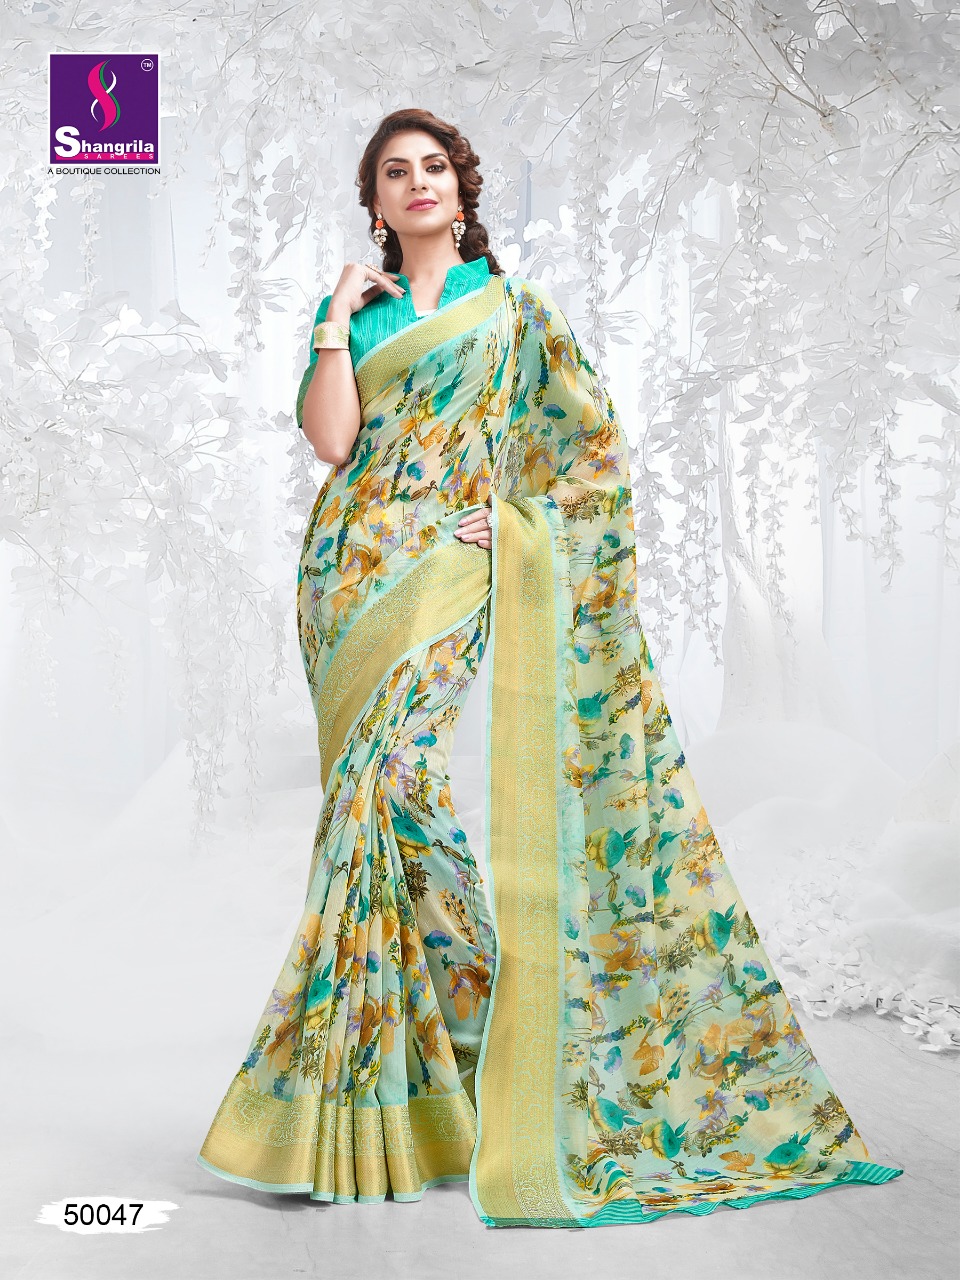 Shangrila Kadambari linen beautiful collection of colorful sarees